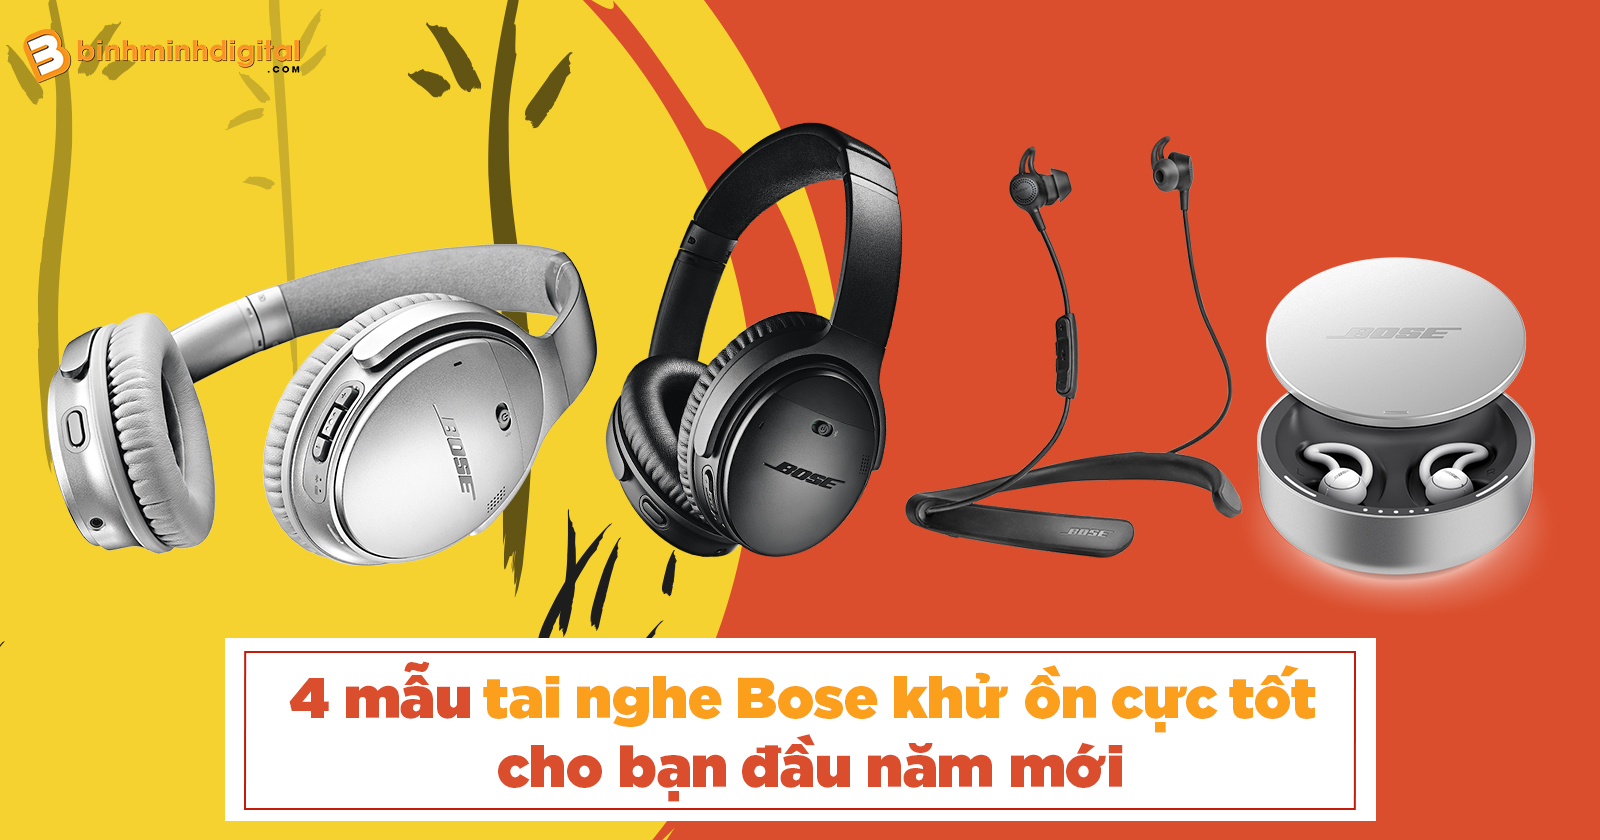 4 mẫu tai nghe Bose khử ồn cực tốt cho bạn đầu năm mới